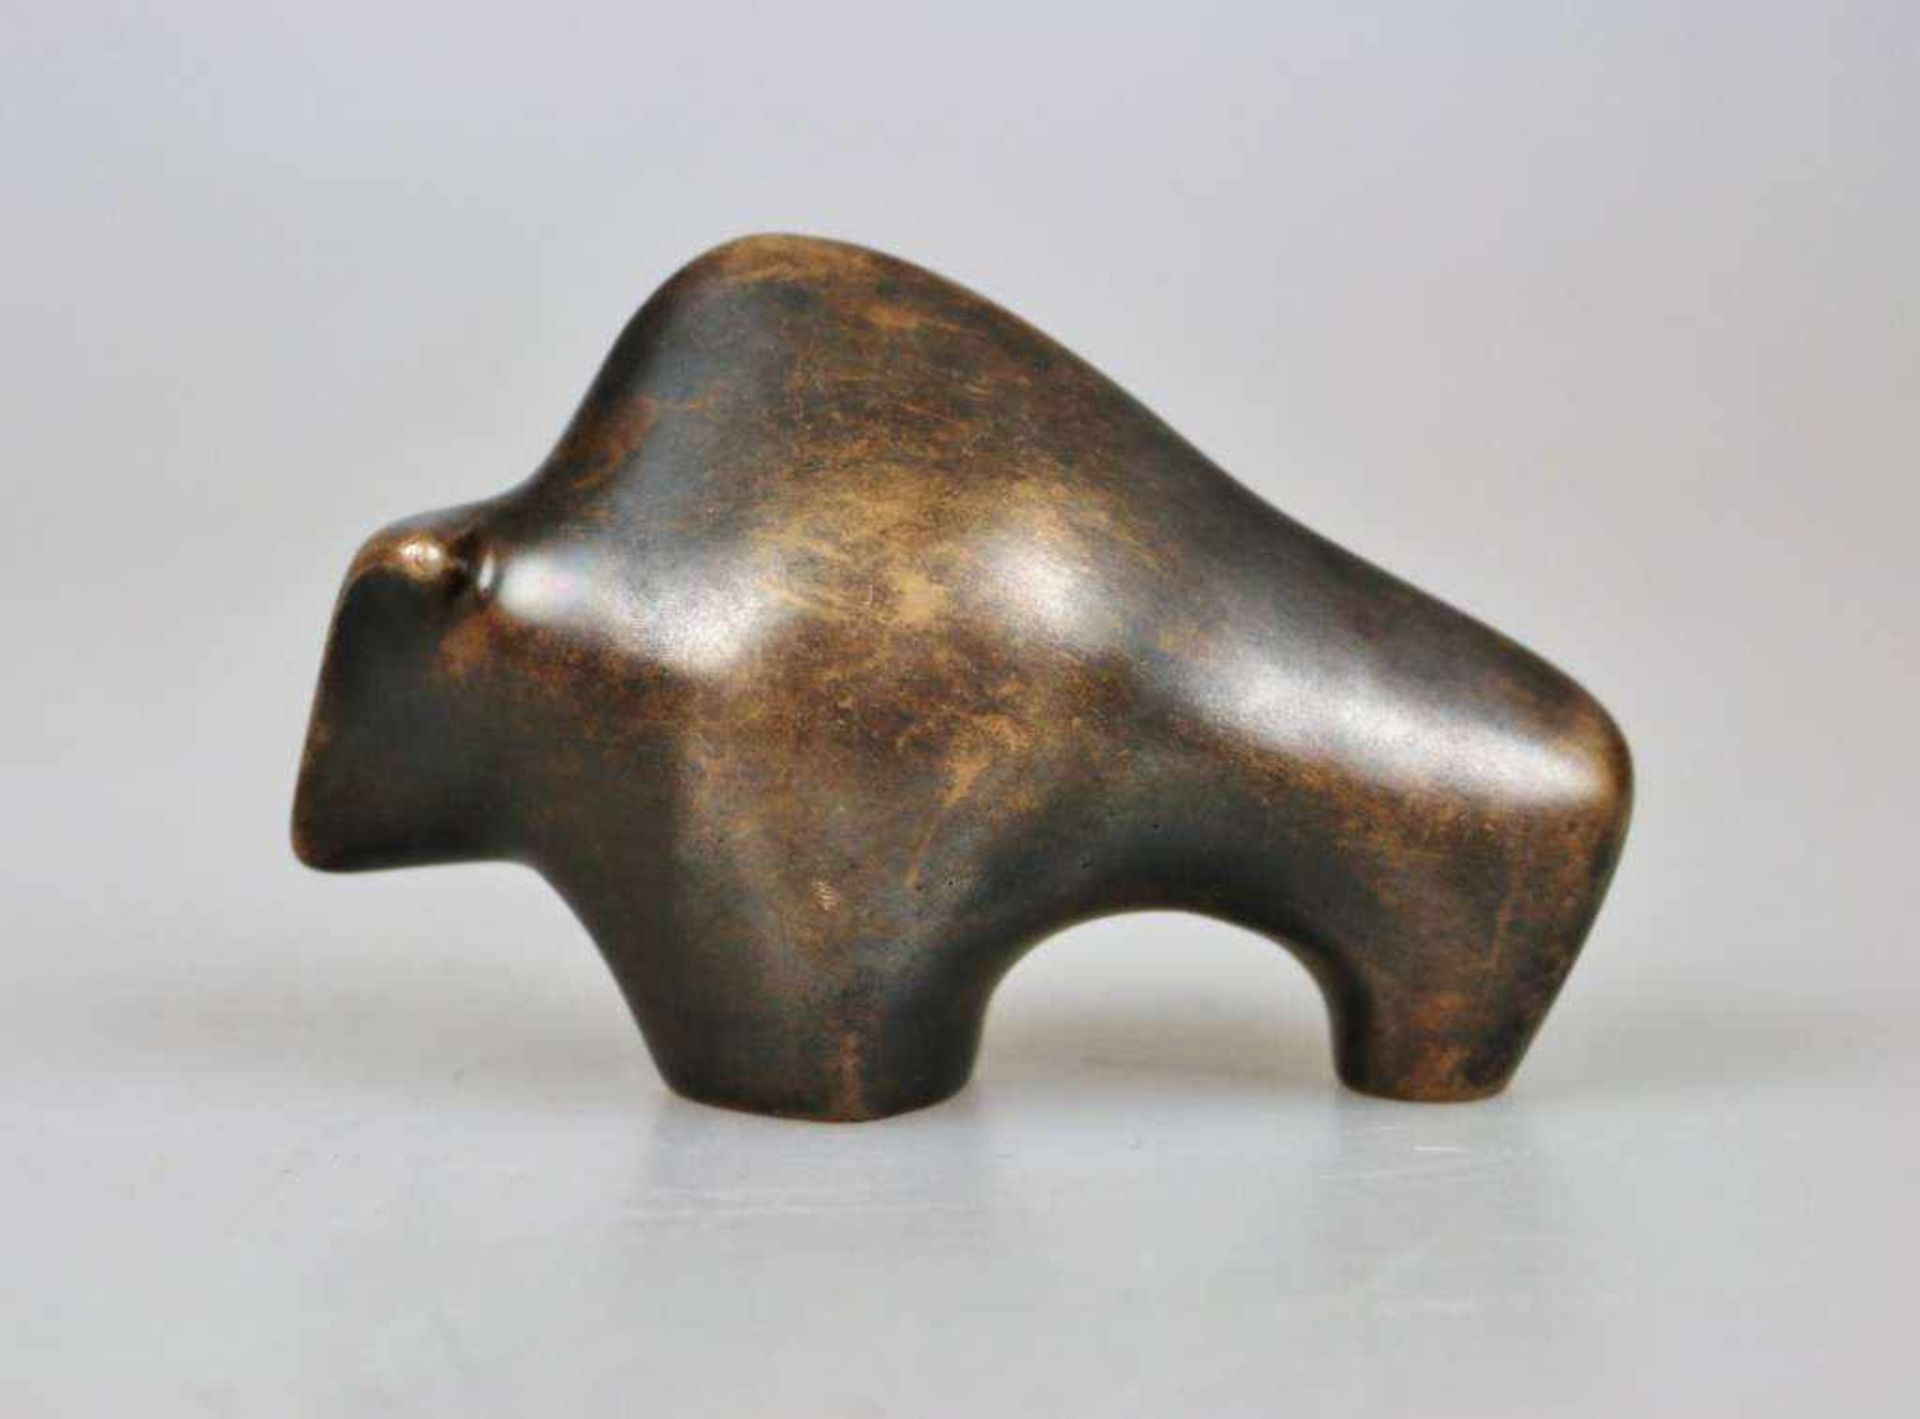 Bronzeskulptur Deus, Bulle. Stempel Gießerei Kunstguss Eschenburg Lahn-Dill GmbH, H: 8 cm. - Bild 2 aus 3